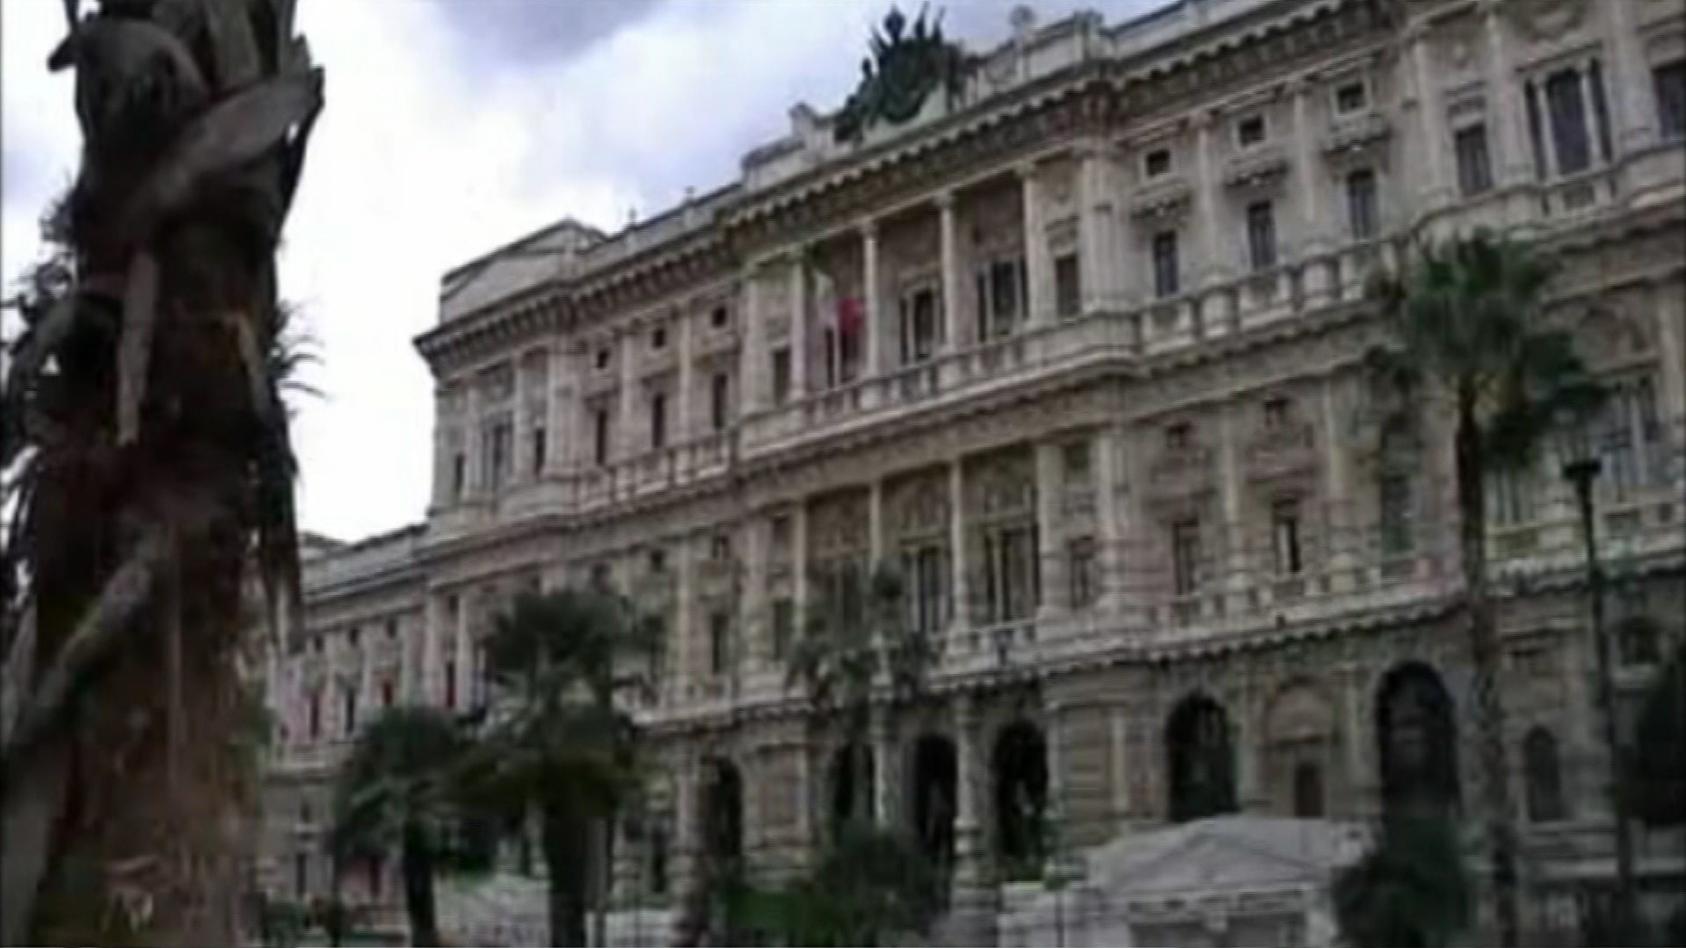 Die "Corte Suprema di Cassazione" (deutsch Kassationsgerichtshof) ist das höchste Gericht der ordentlichen Gerichtsbarkeit Italiens.